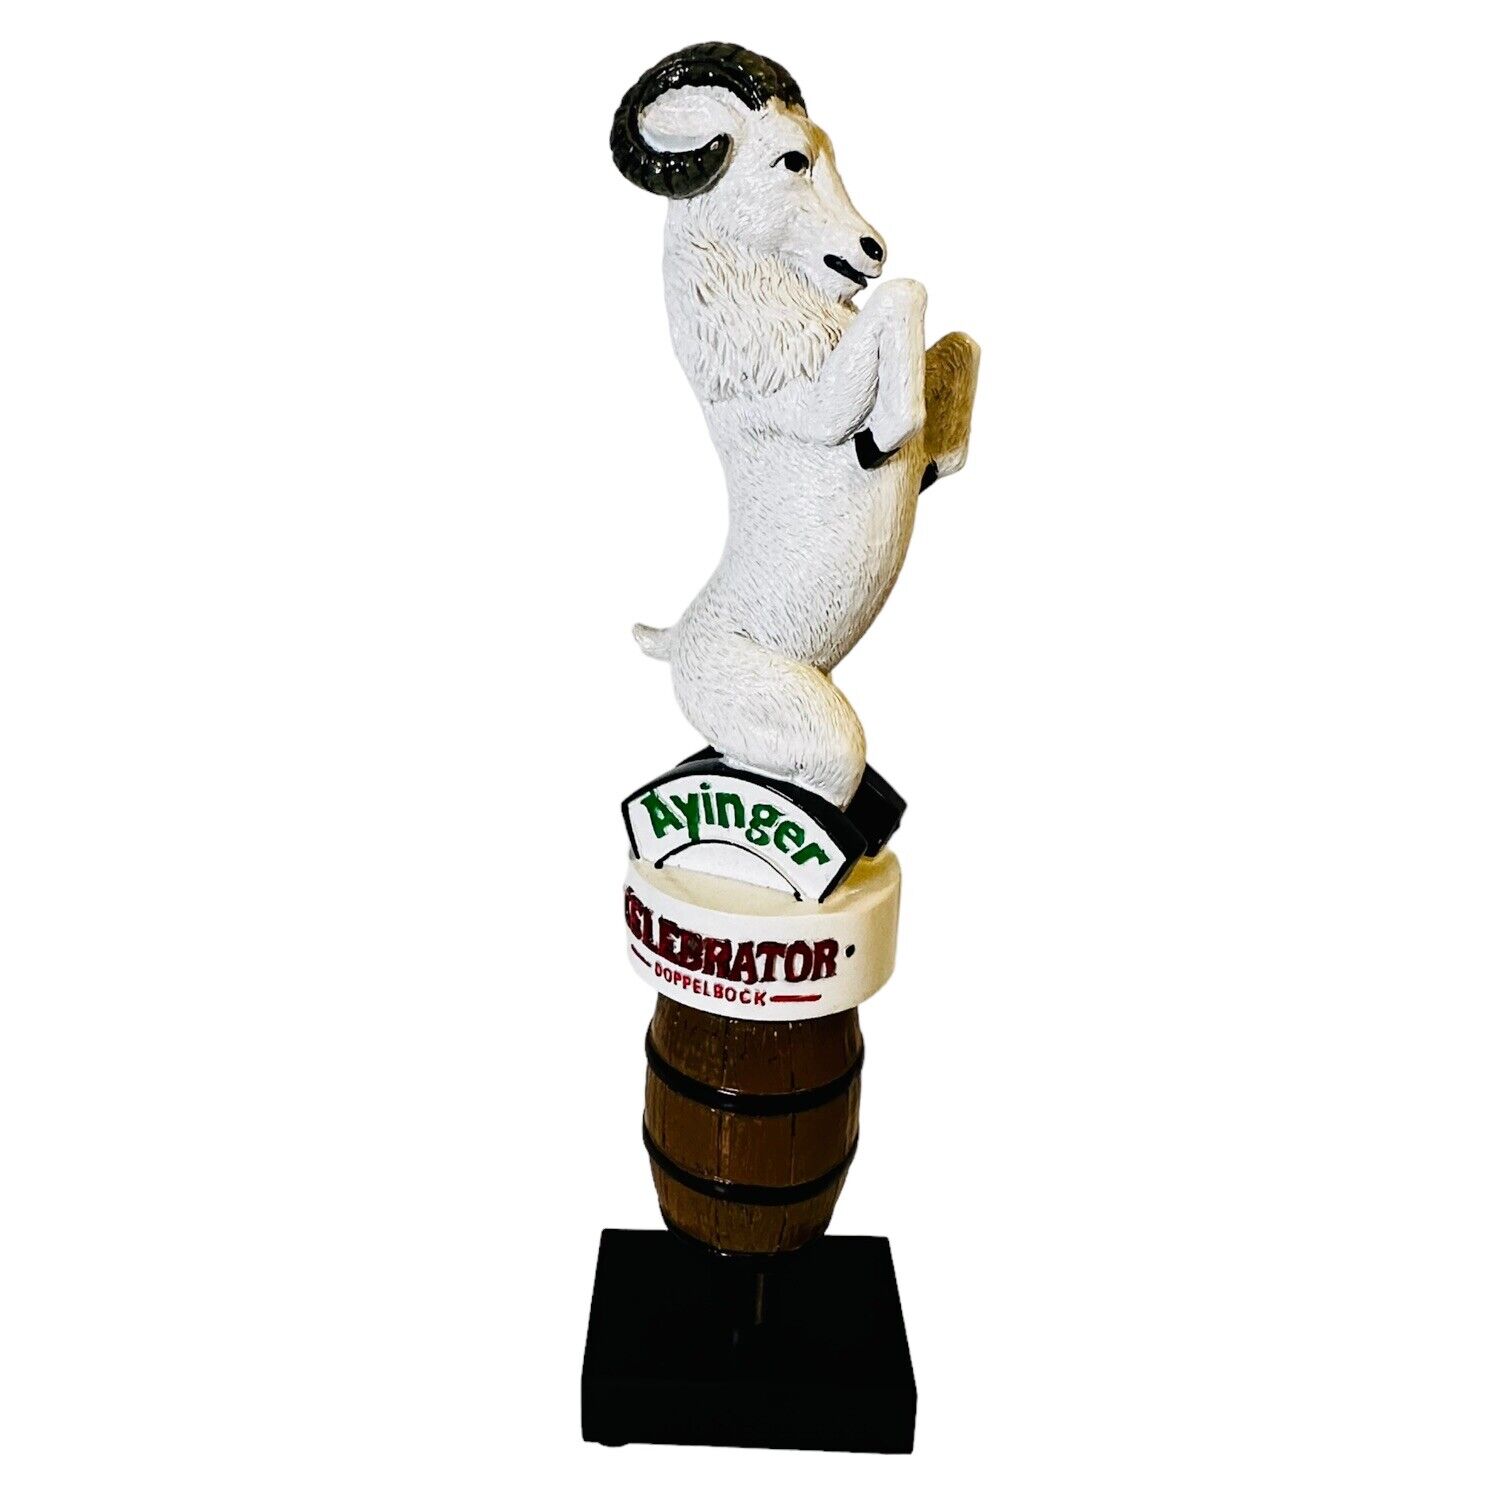 AYINGER Ram beer tap handle DOPPELBOCK Celebrator Mancave Bar Keg Brewing